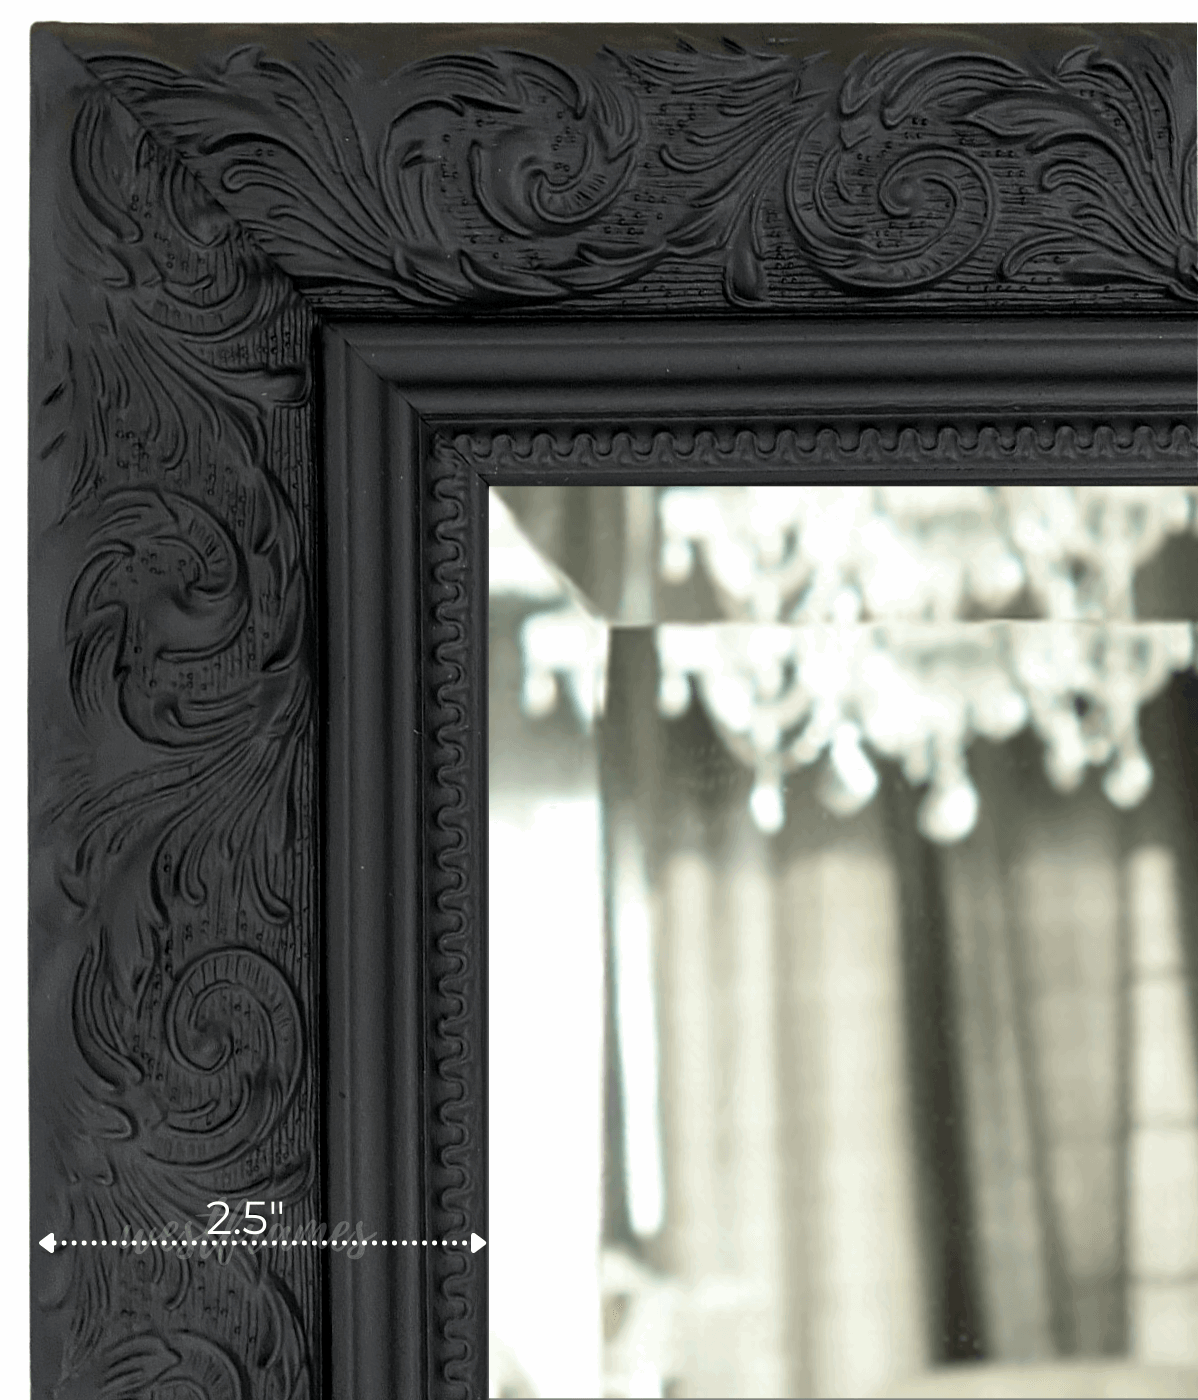 Bella French Ornate Embossed Framed Wall Mirror Vintage Black - West Frames